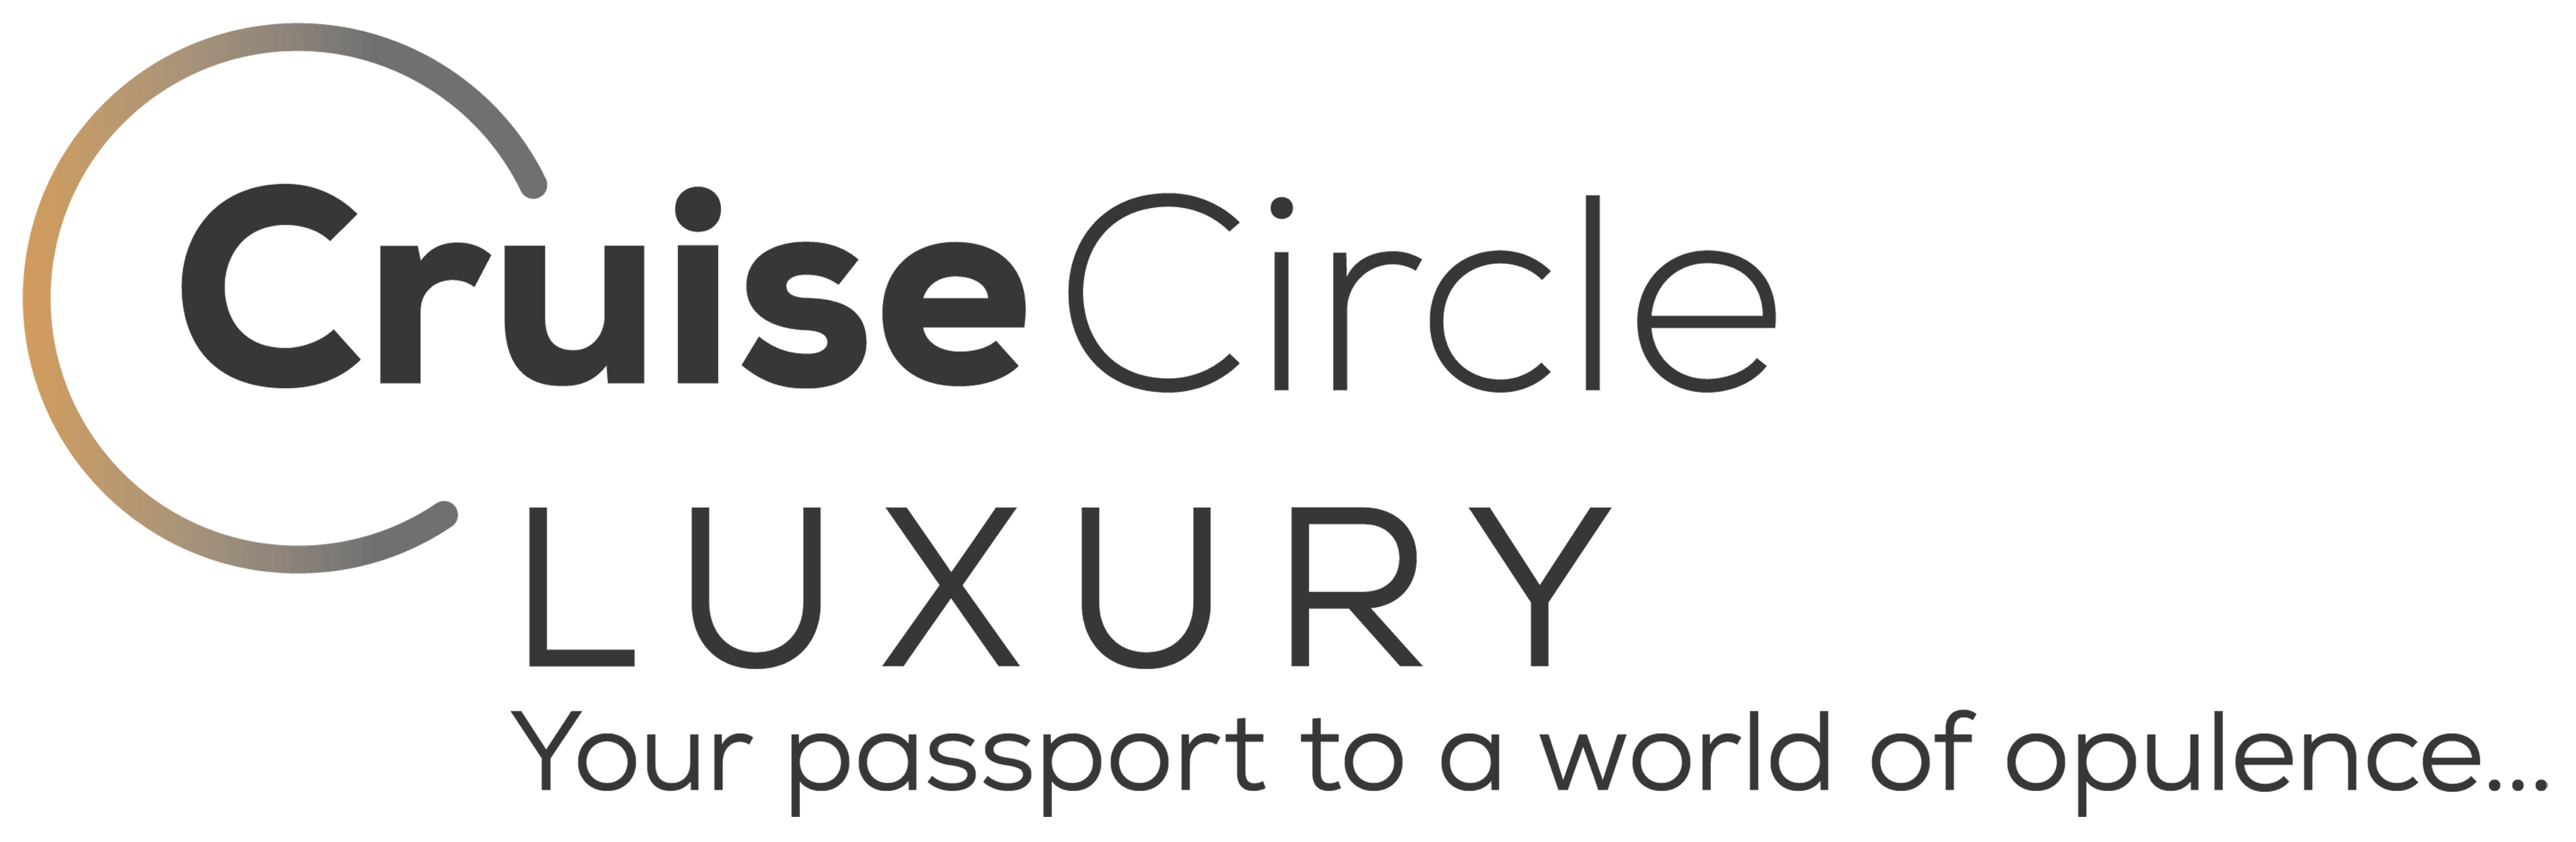 Cruise-Circle-Logo